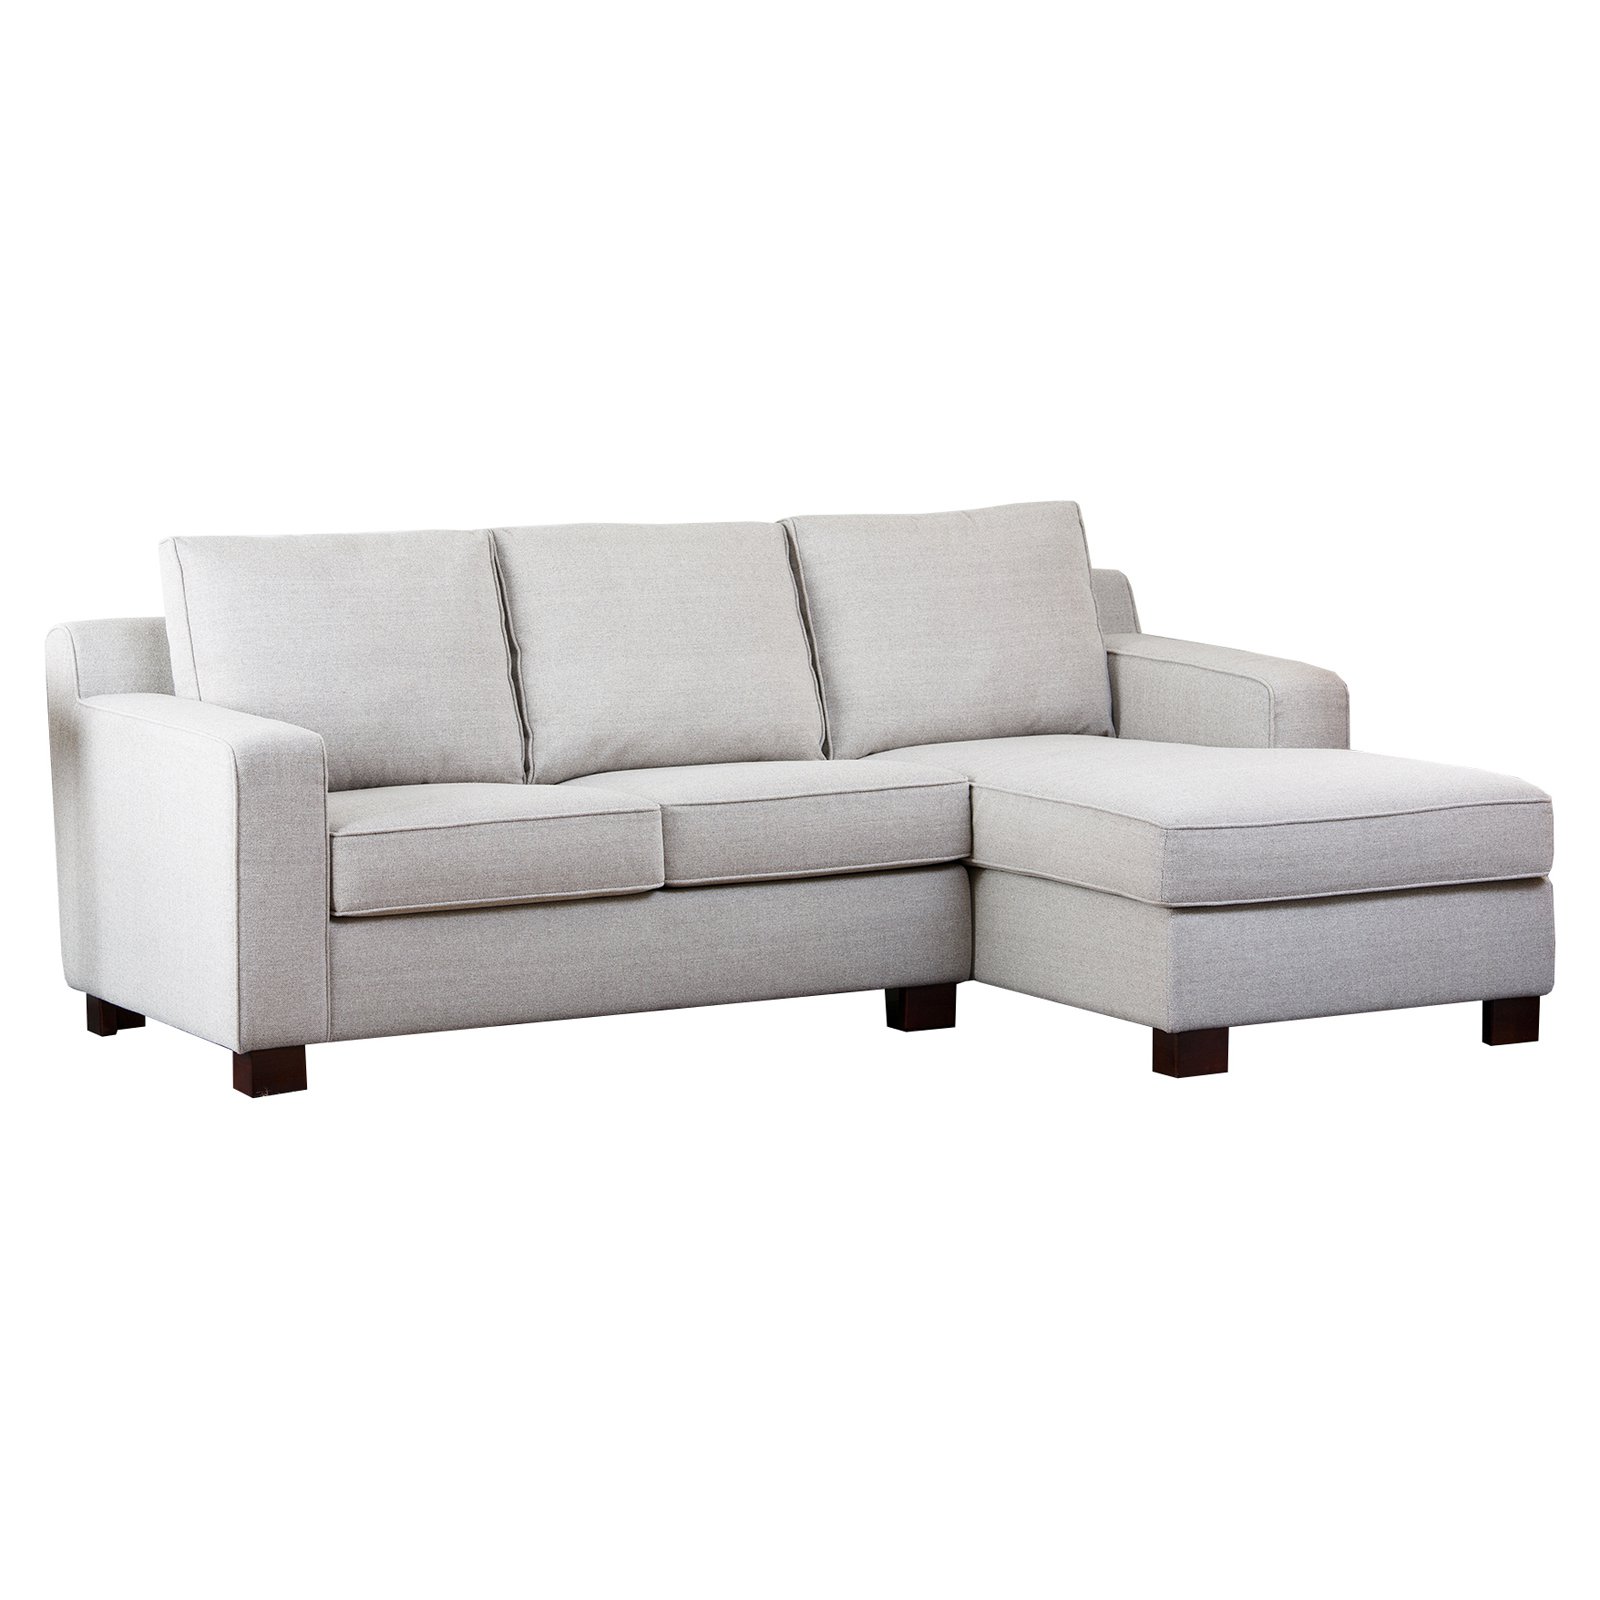 Abbyson Regina Sectional Sofa - Gray